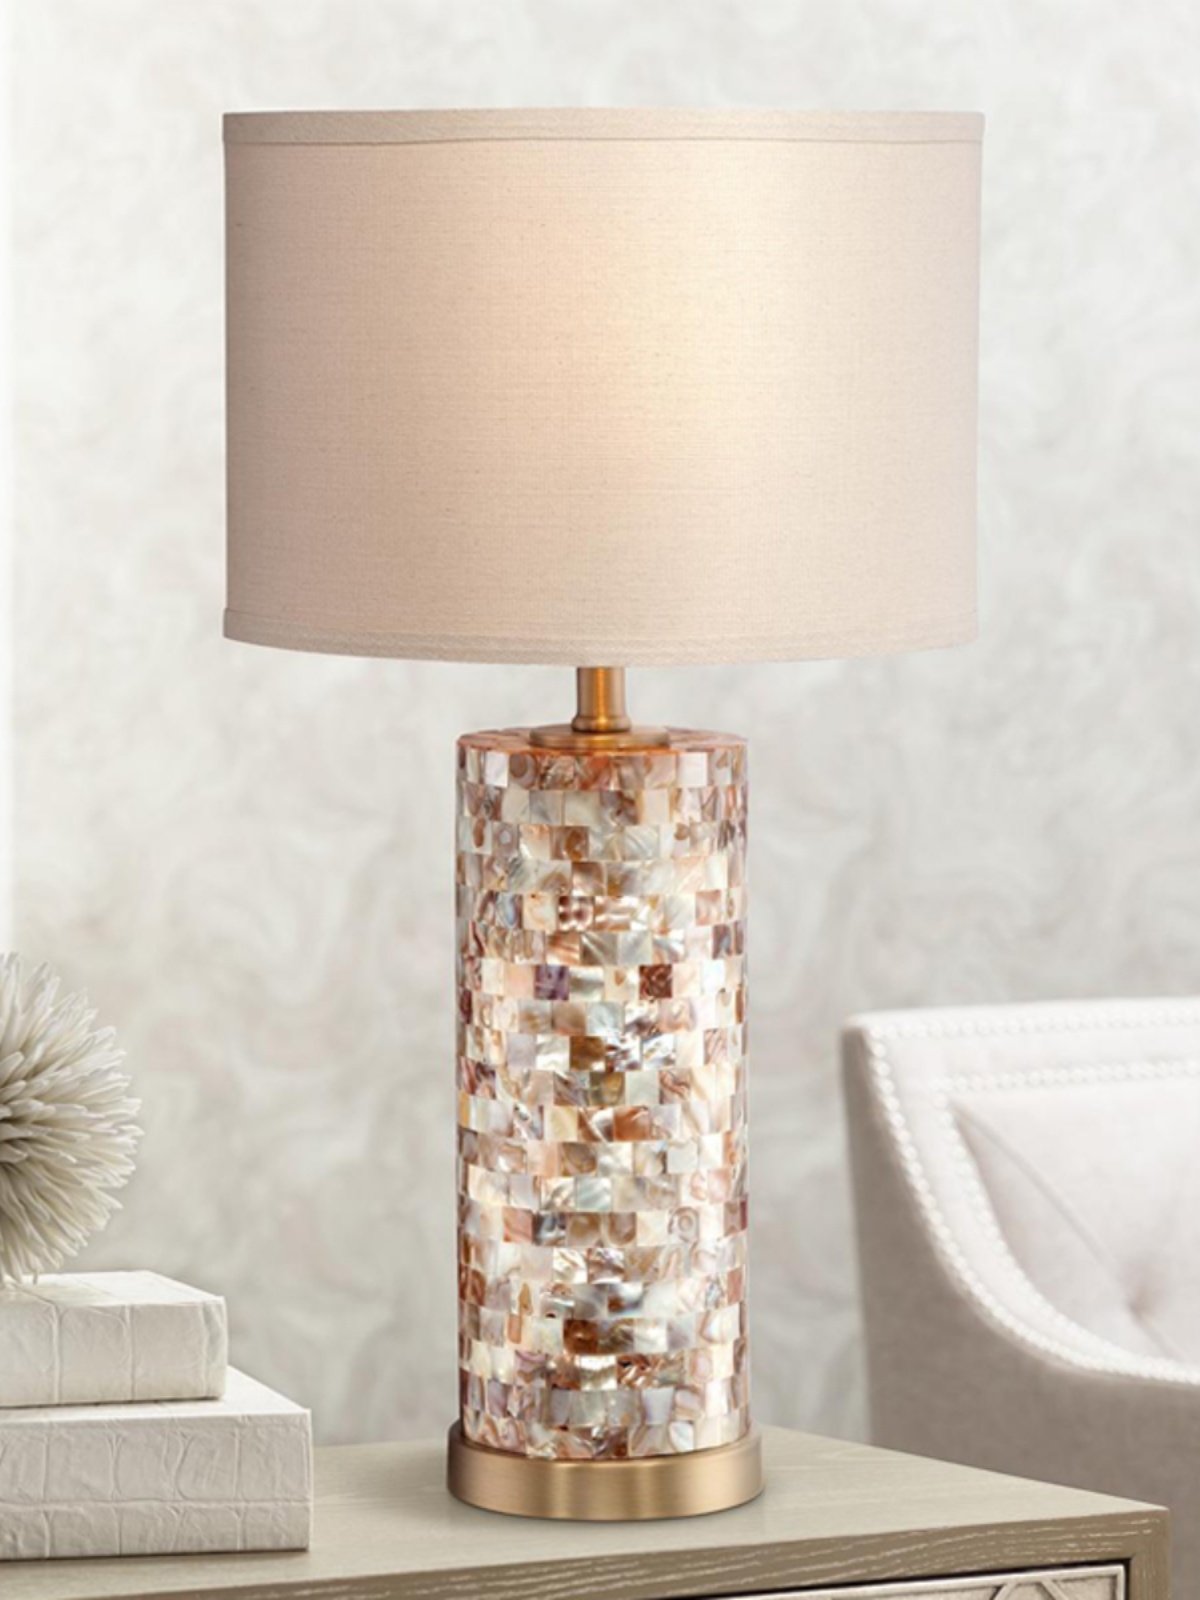 創意貝殼床頭檯燈 簡約現代風格裝飾燈具